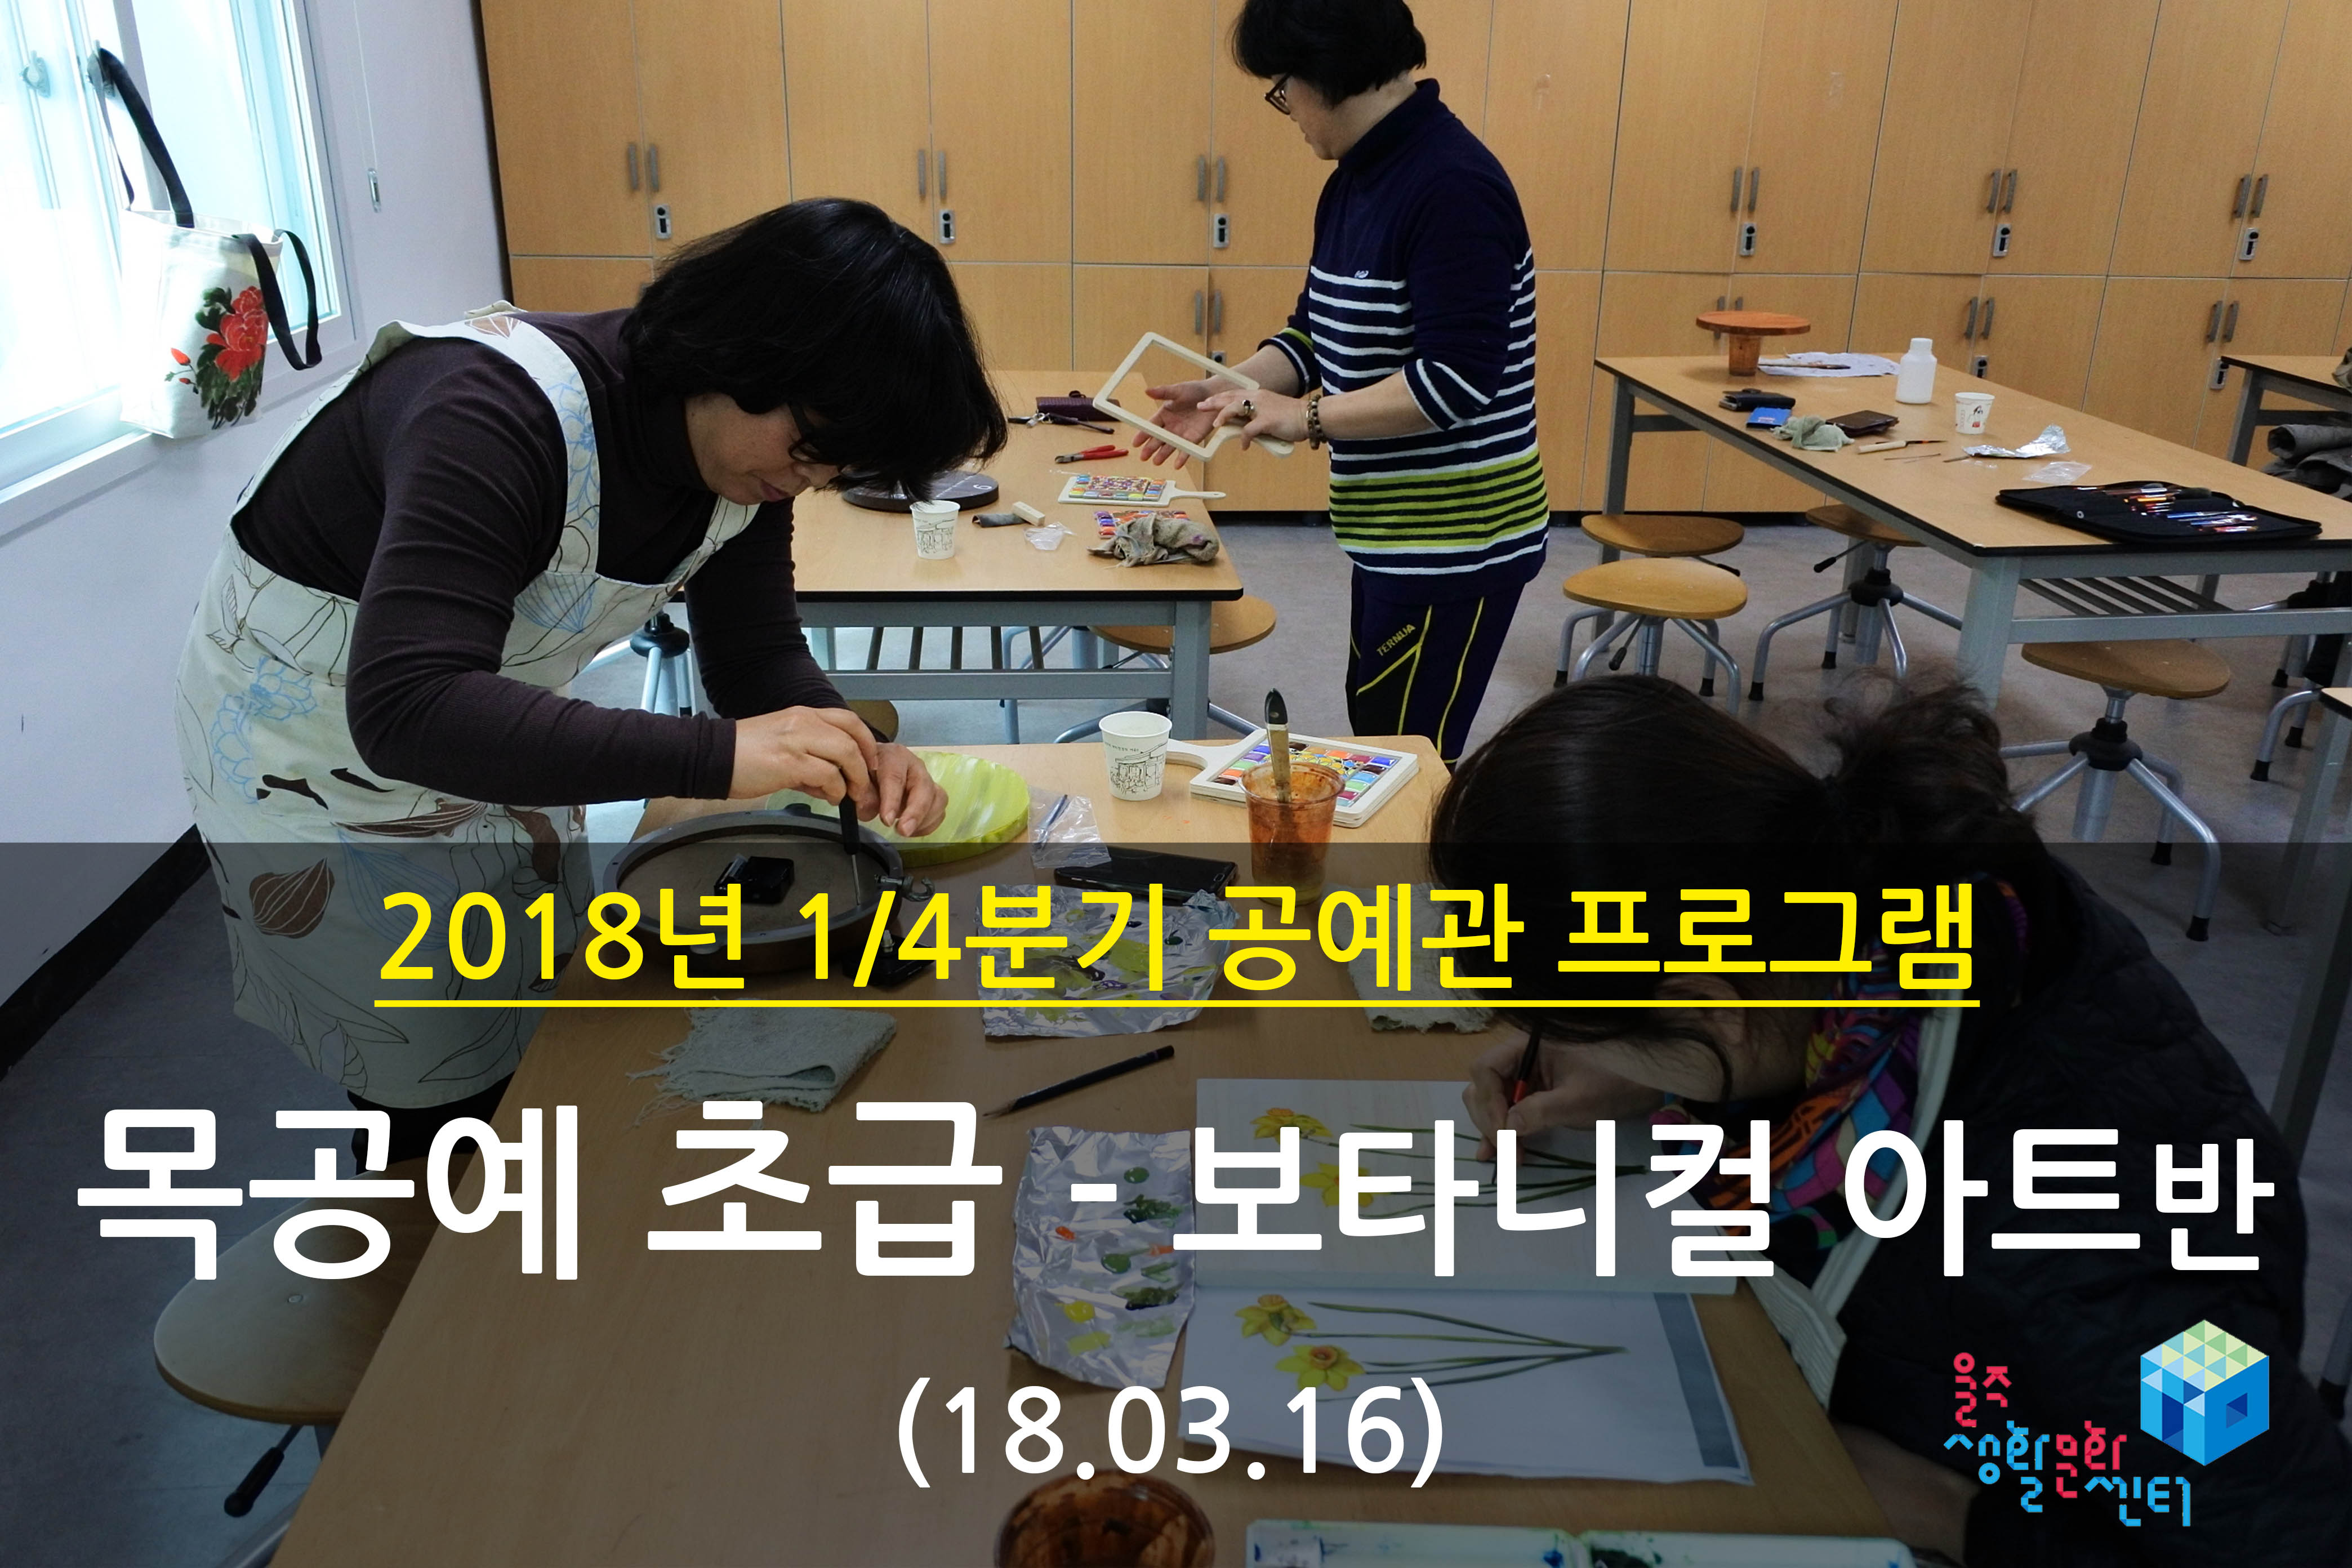 2018.03.16 _ 목공예 초급 - 보타니컬 아트반 _ 1/4분기 10주차 수업